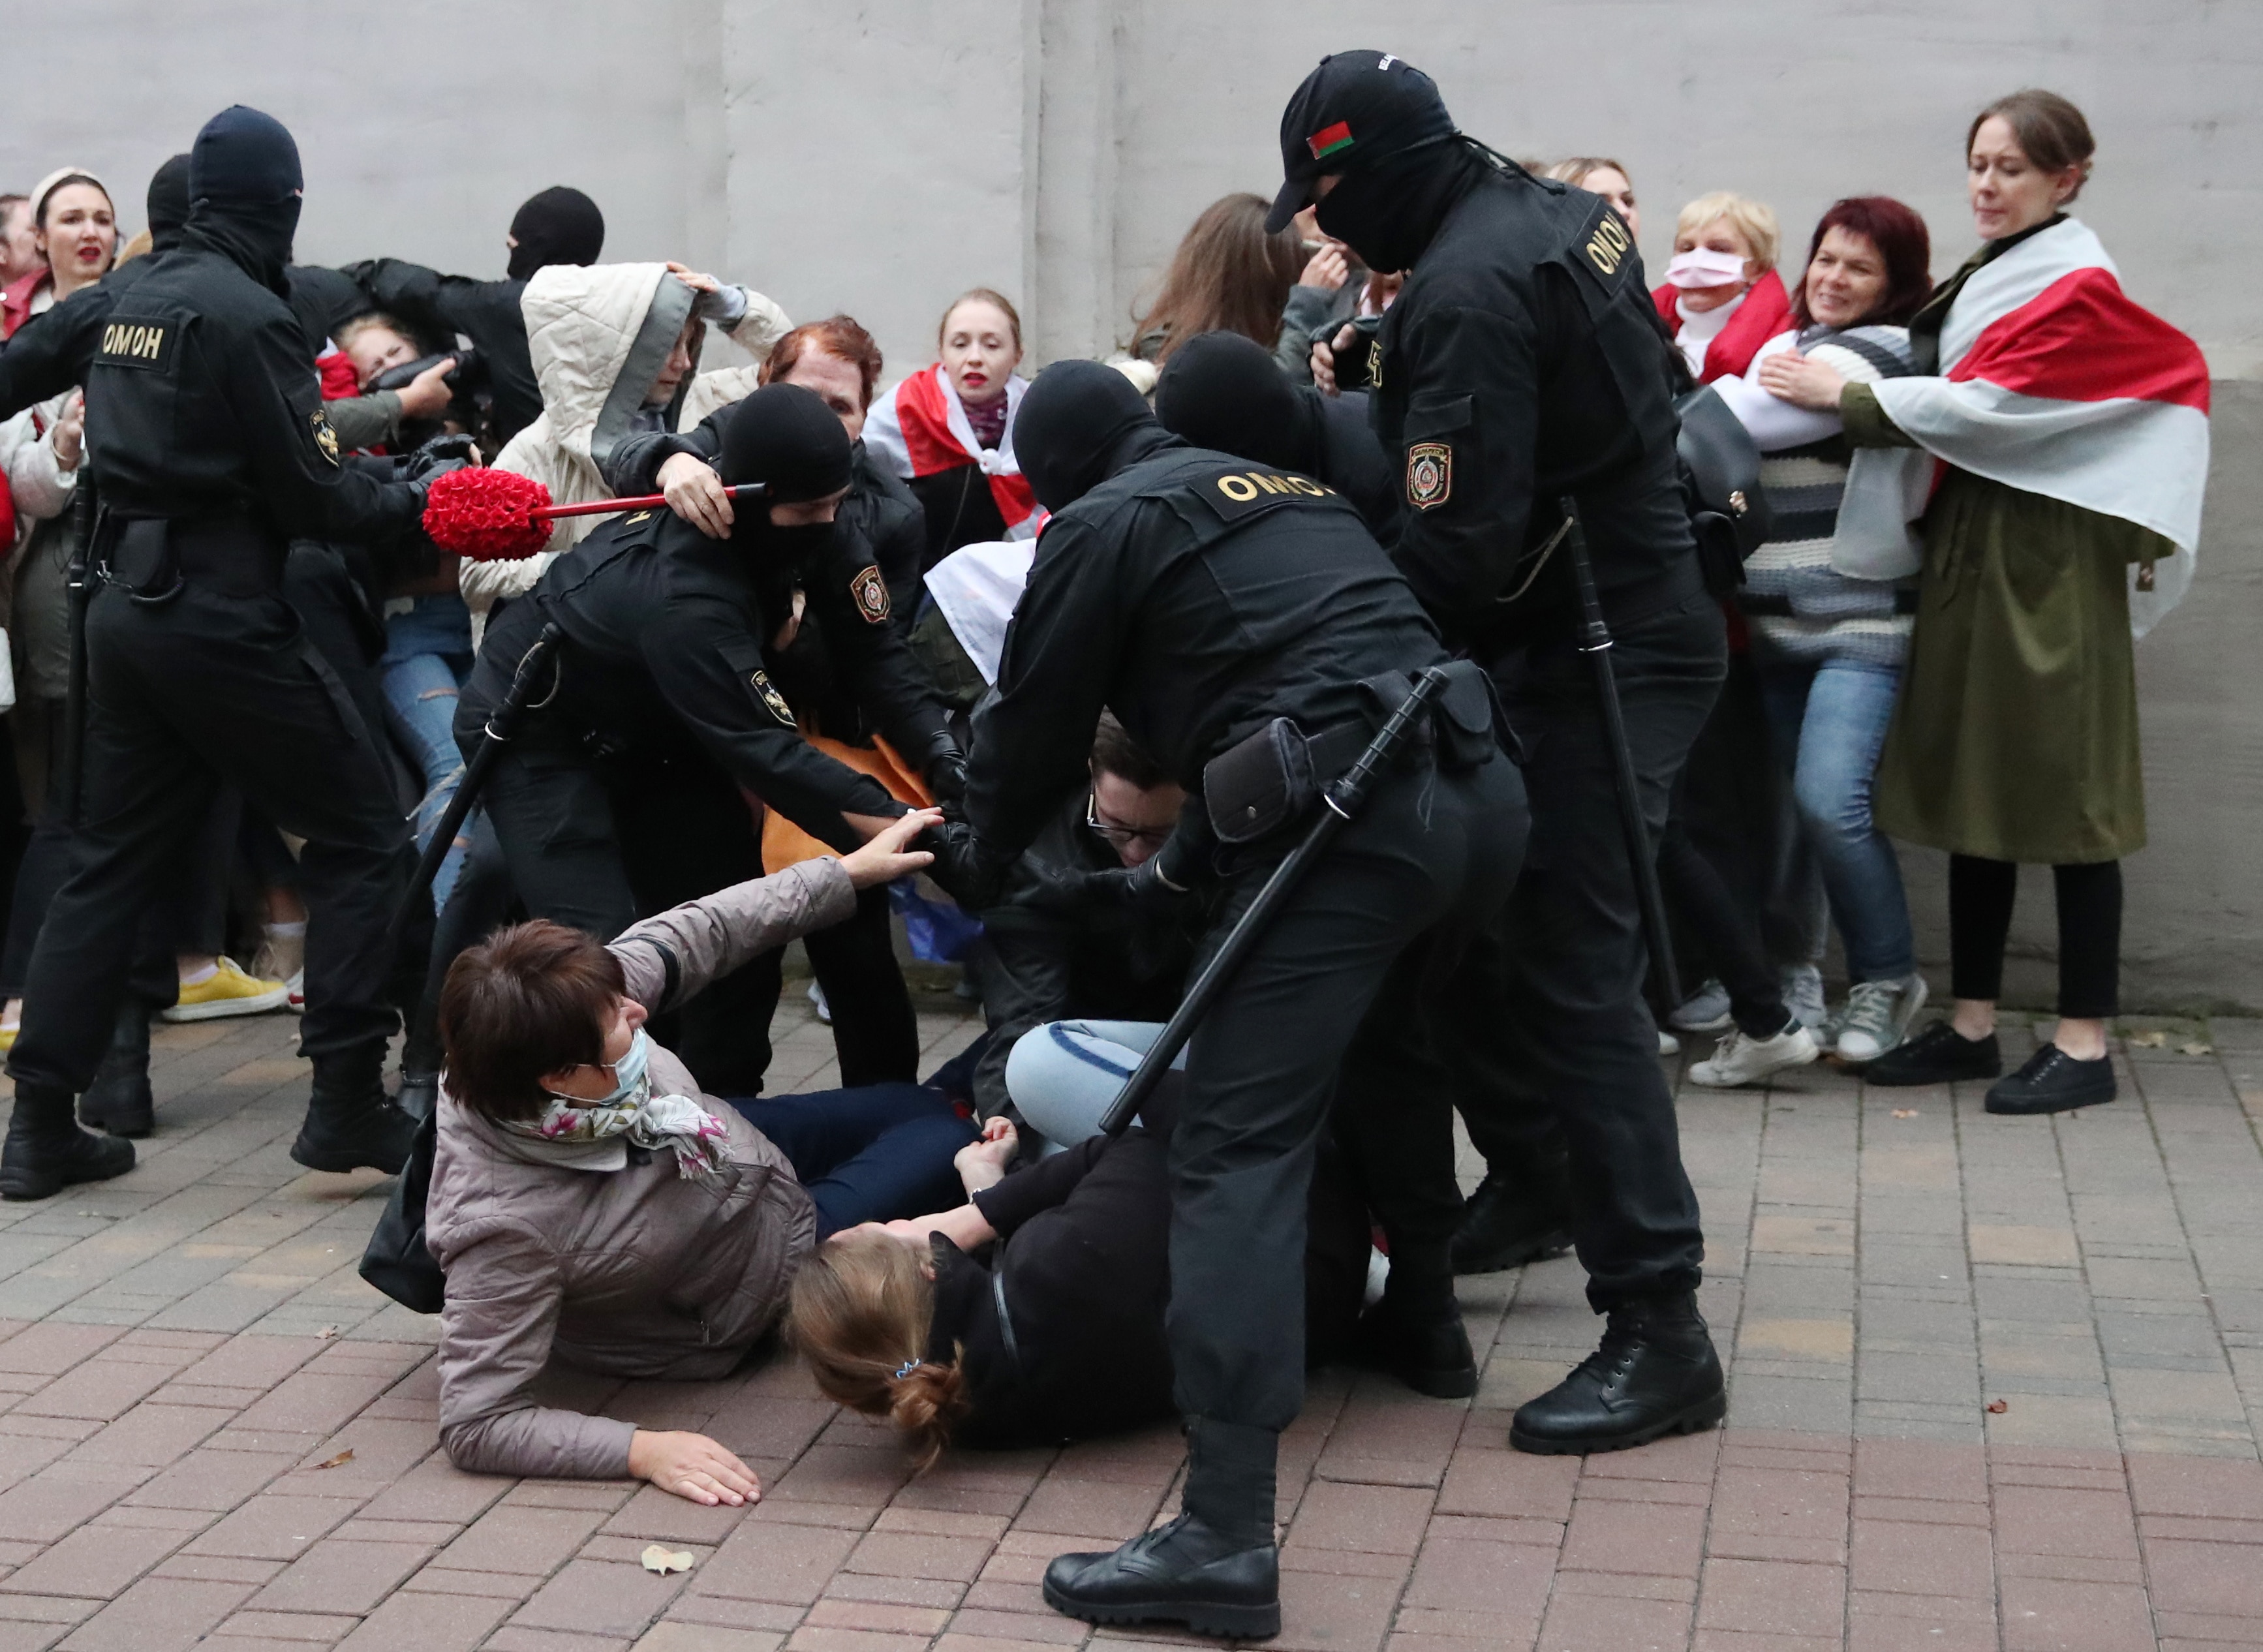 الشرطة في بيلاروسيا تعتقل نشطاء معارضين خلال مسيرة لدعم ماريا كوليسنيكوفا.